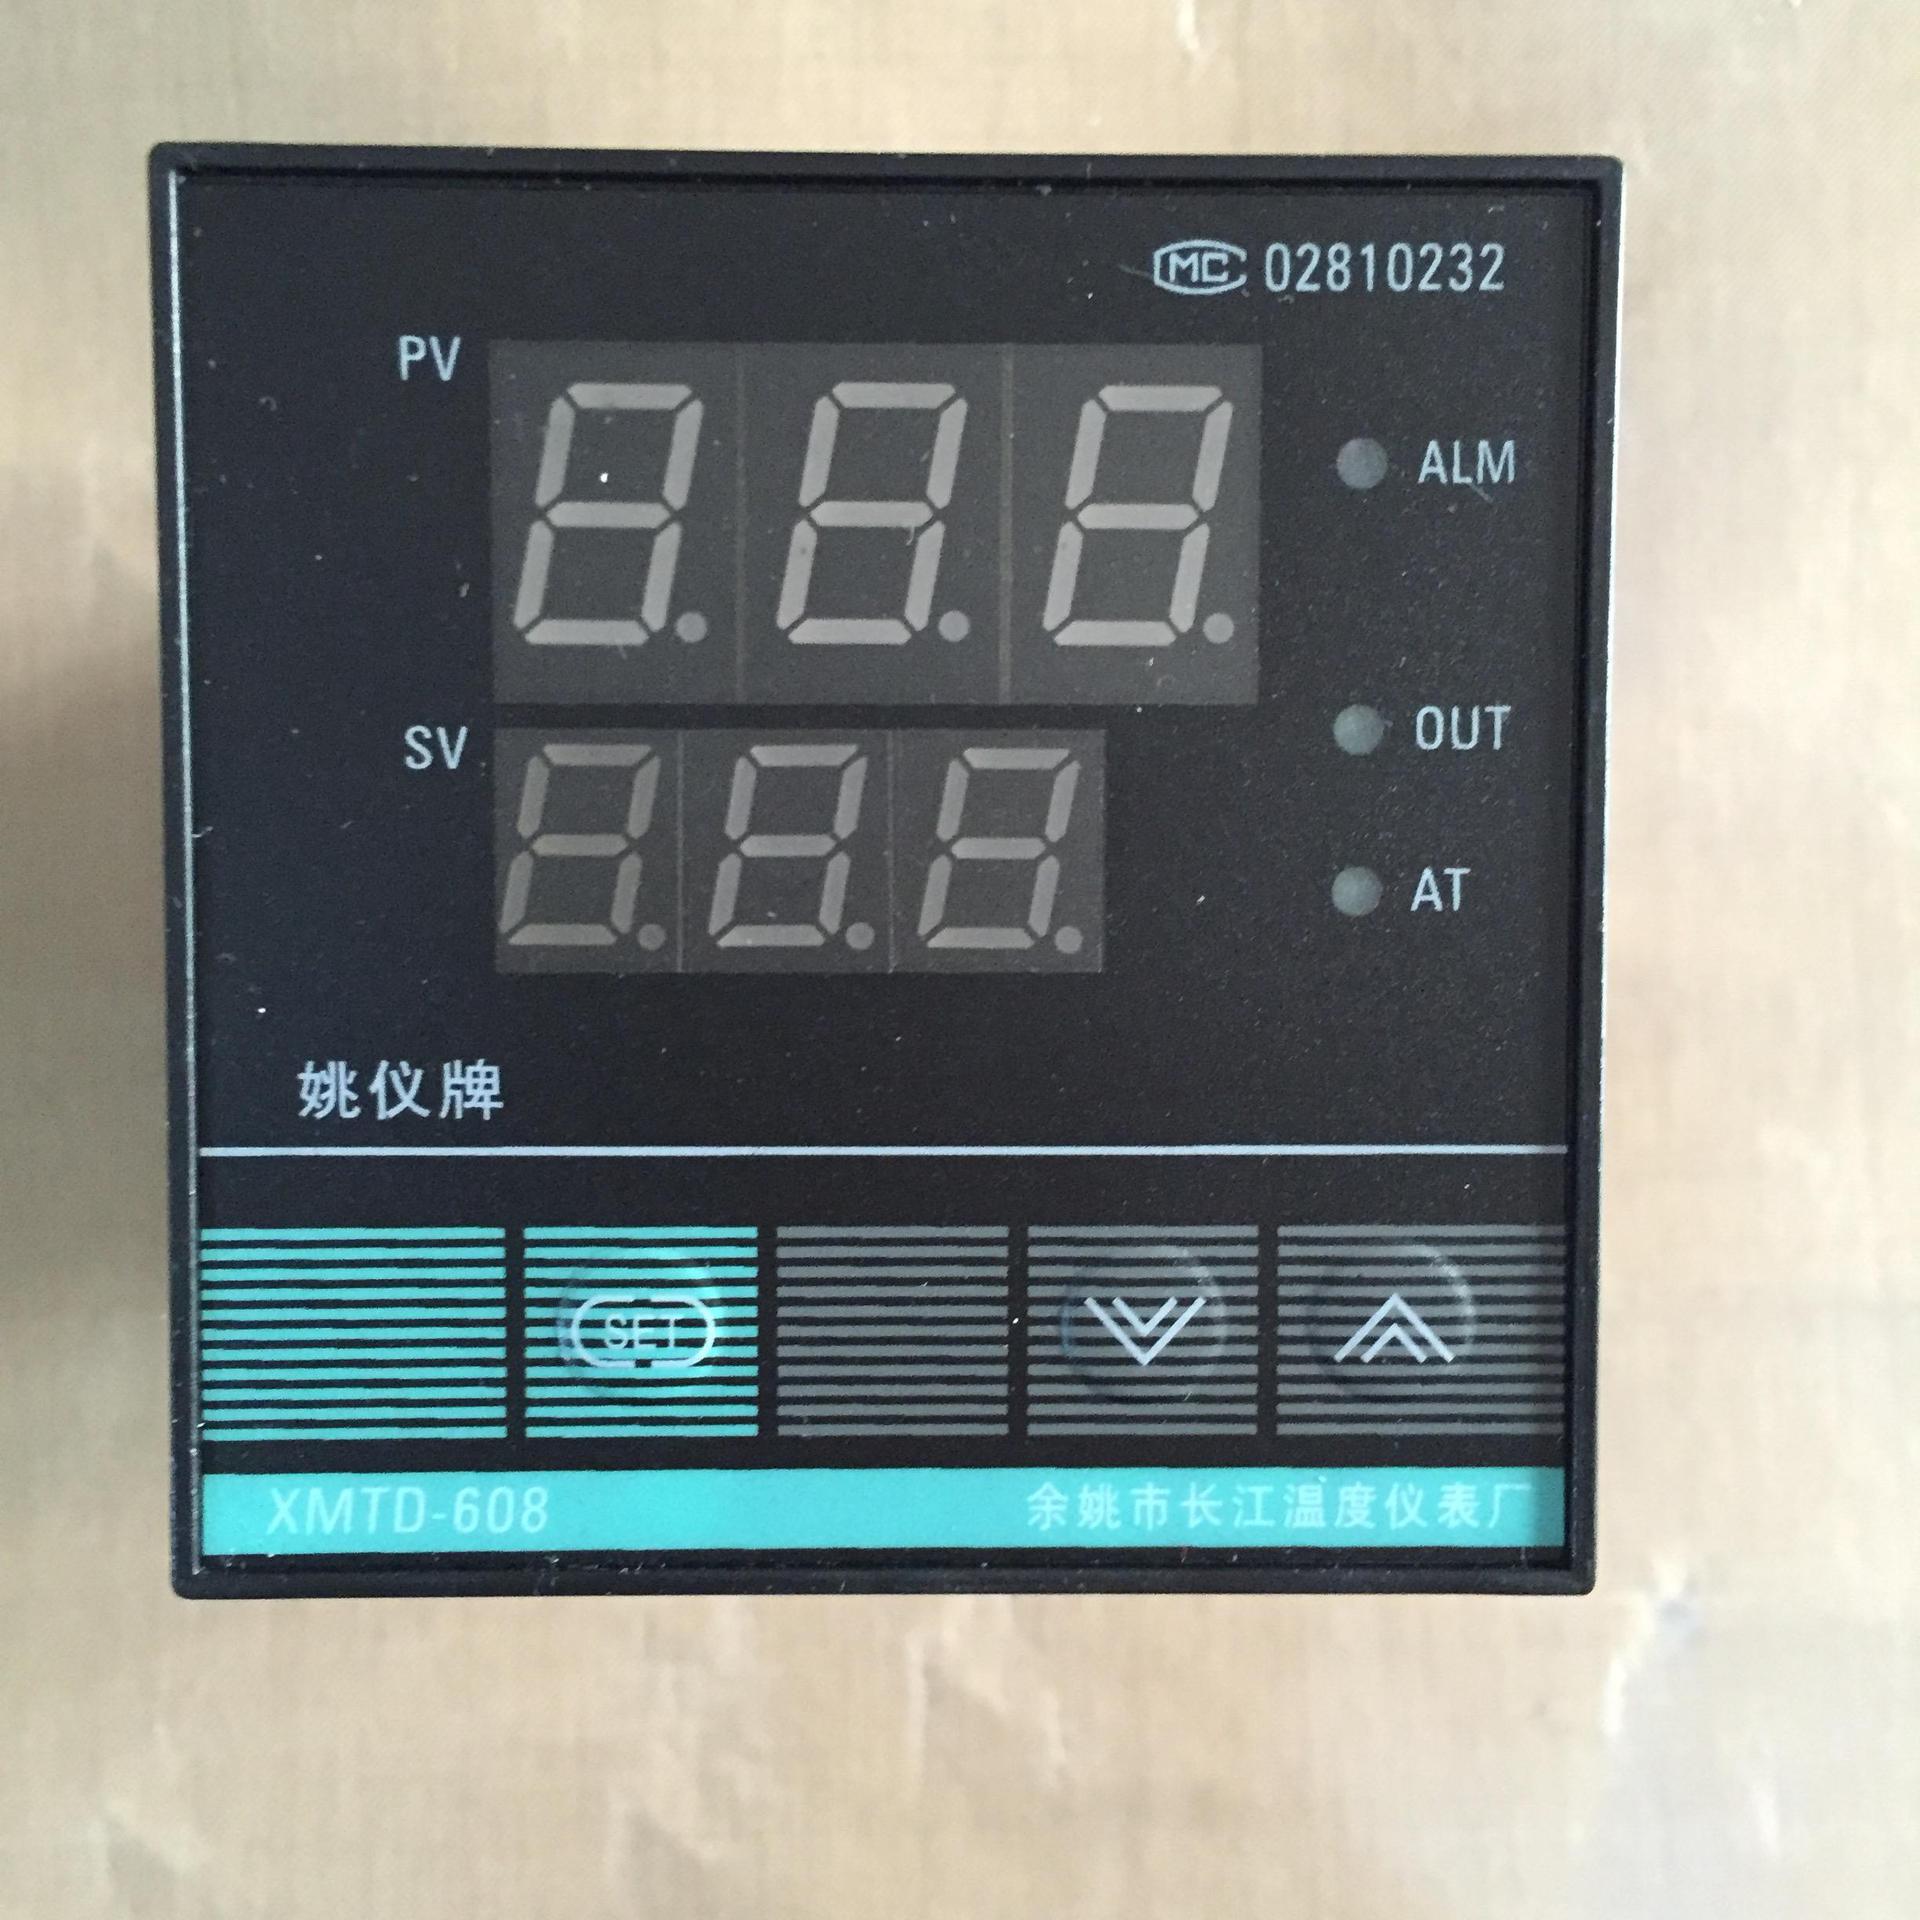 厂家直销长江智能温控仪XMTD-608智能数显温控器温度控制调节器